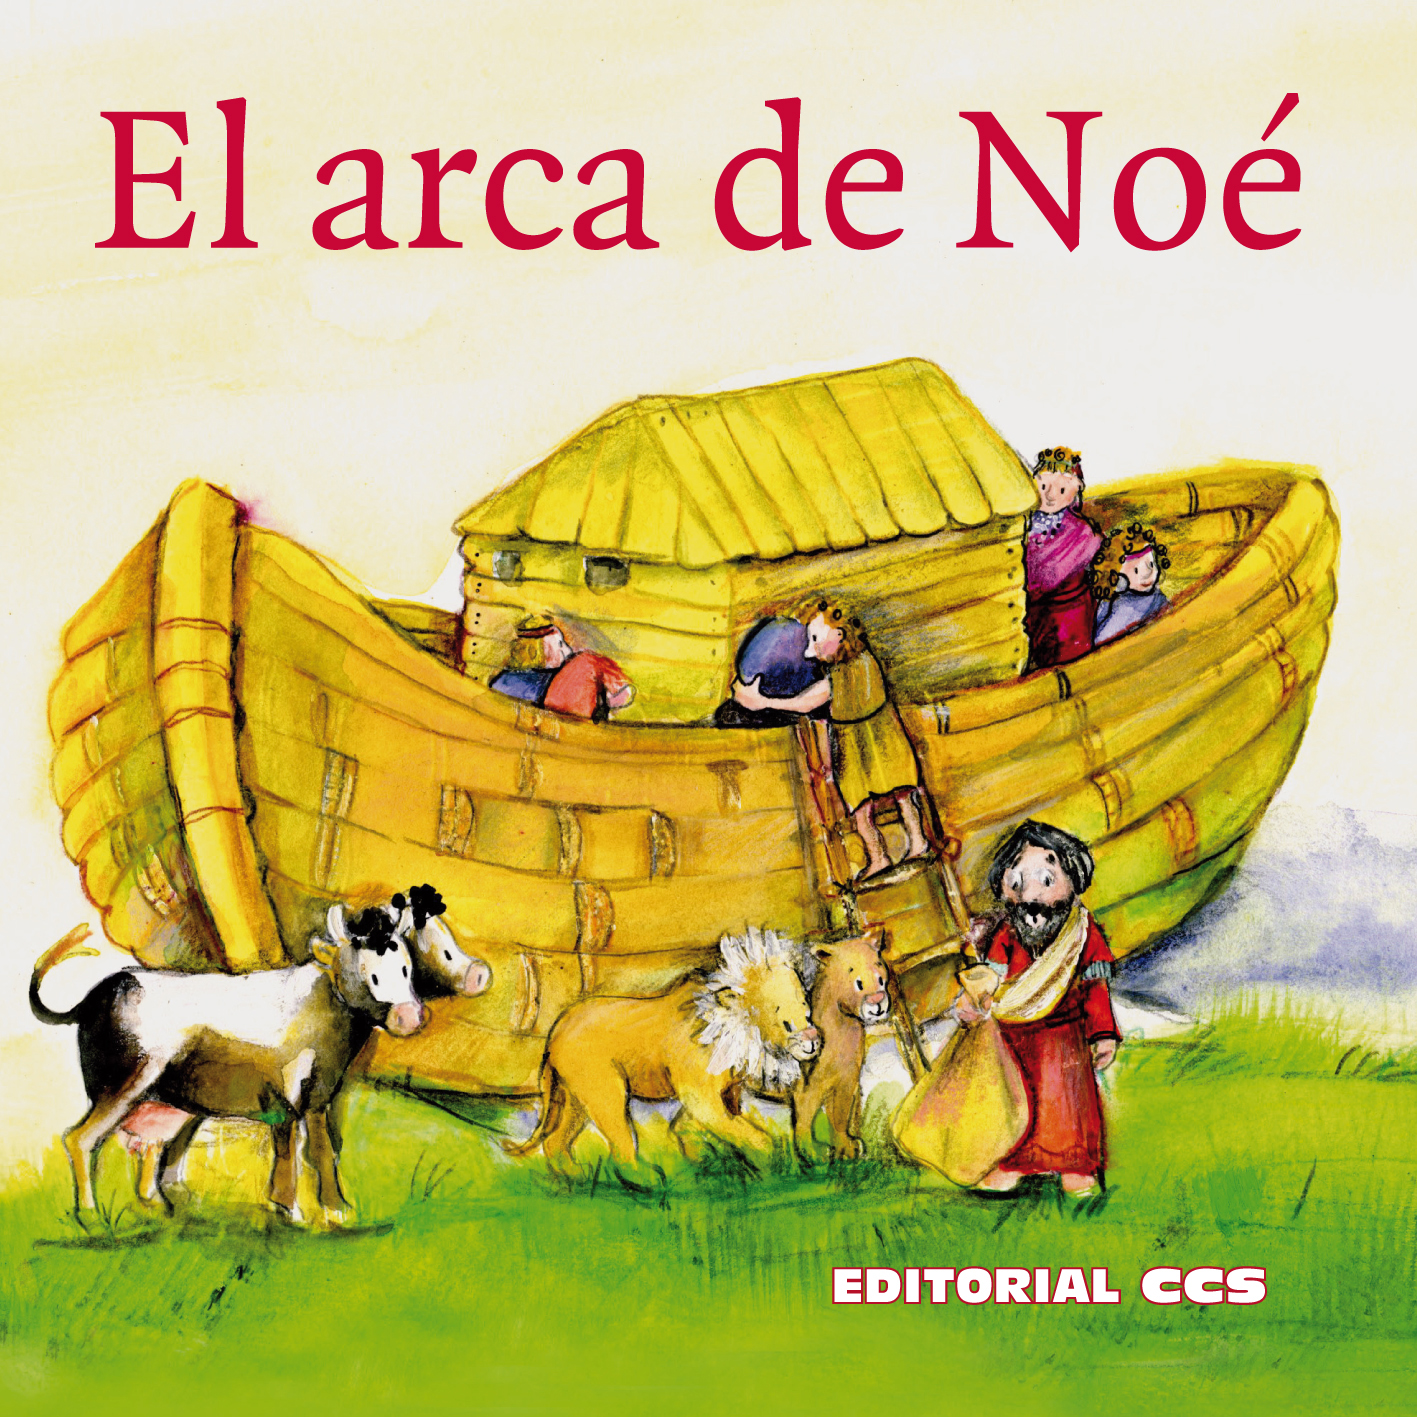 Arca De No Ilustraciones Historia El Arca De Noe Historias De La | Hot ...